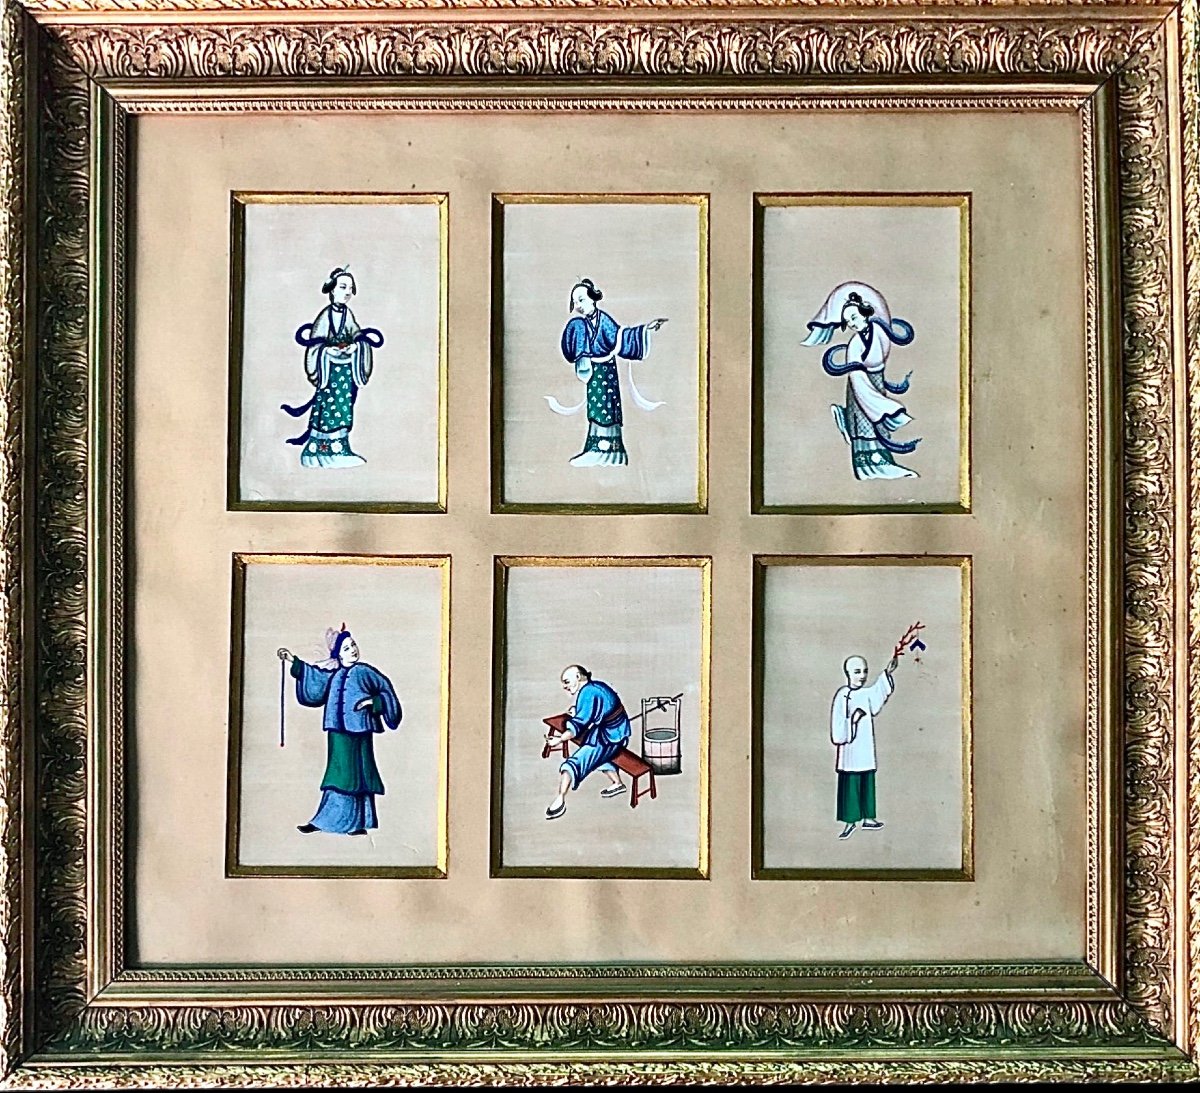 Composizione di 6 dipinti su seta entro cornice in legno dorato raffiguranti personaggi.Cina.